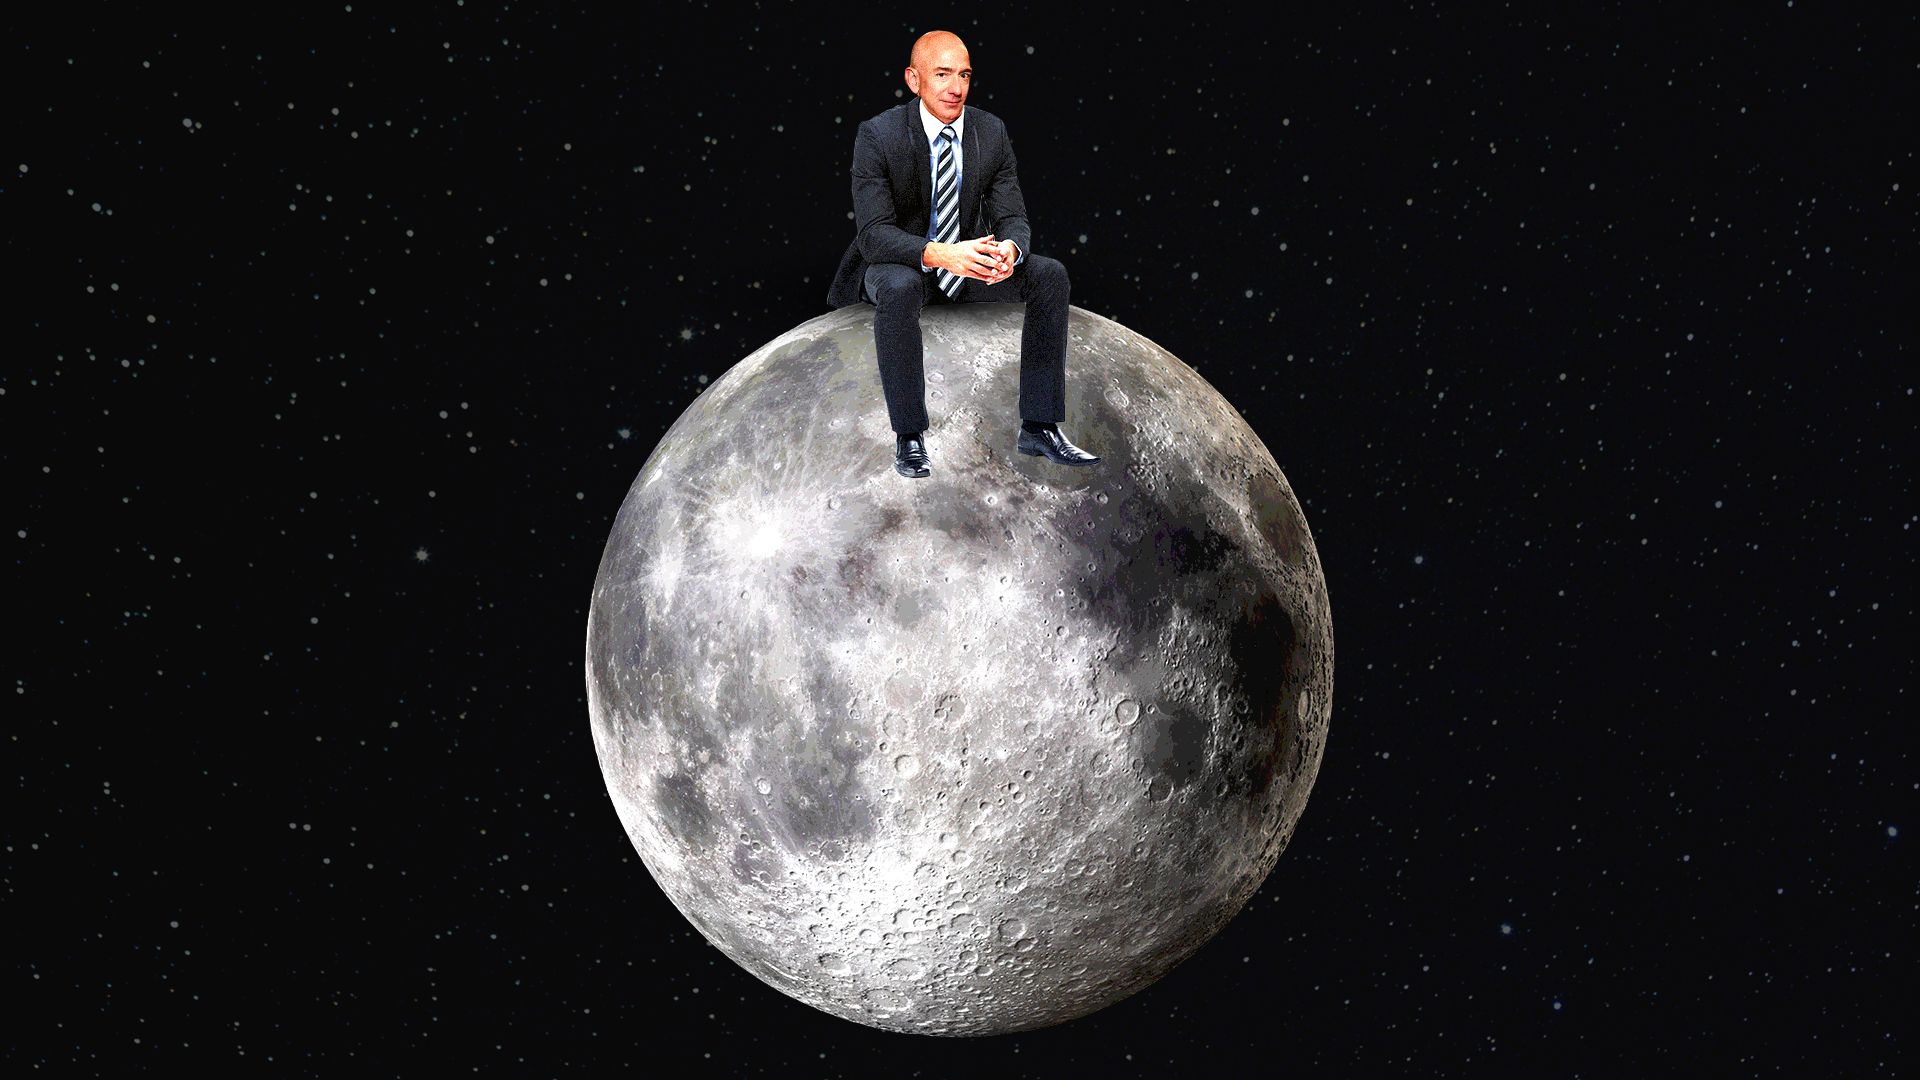 Illustration of Jeff Bezos sitting on the moon